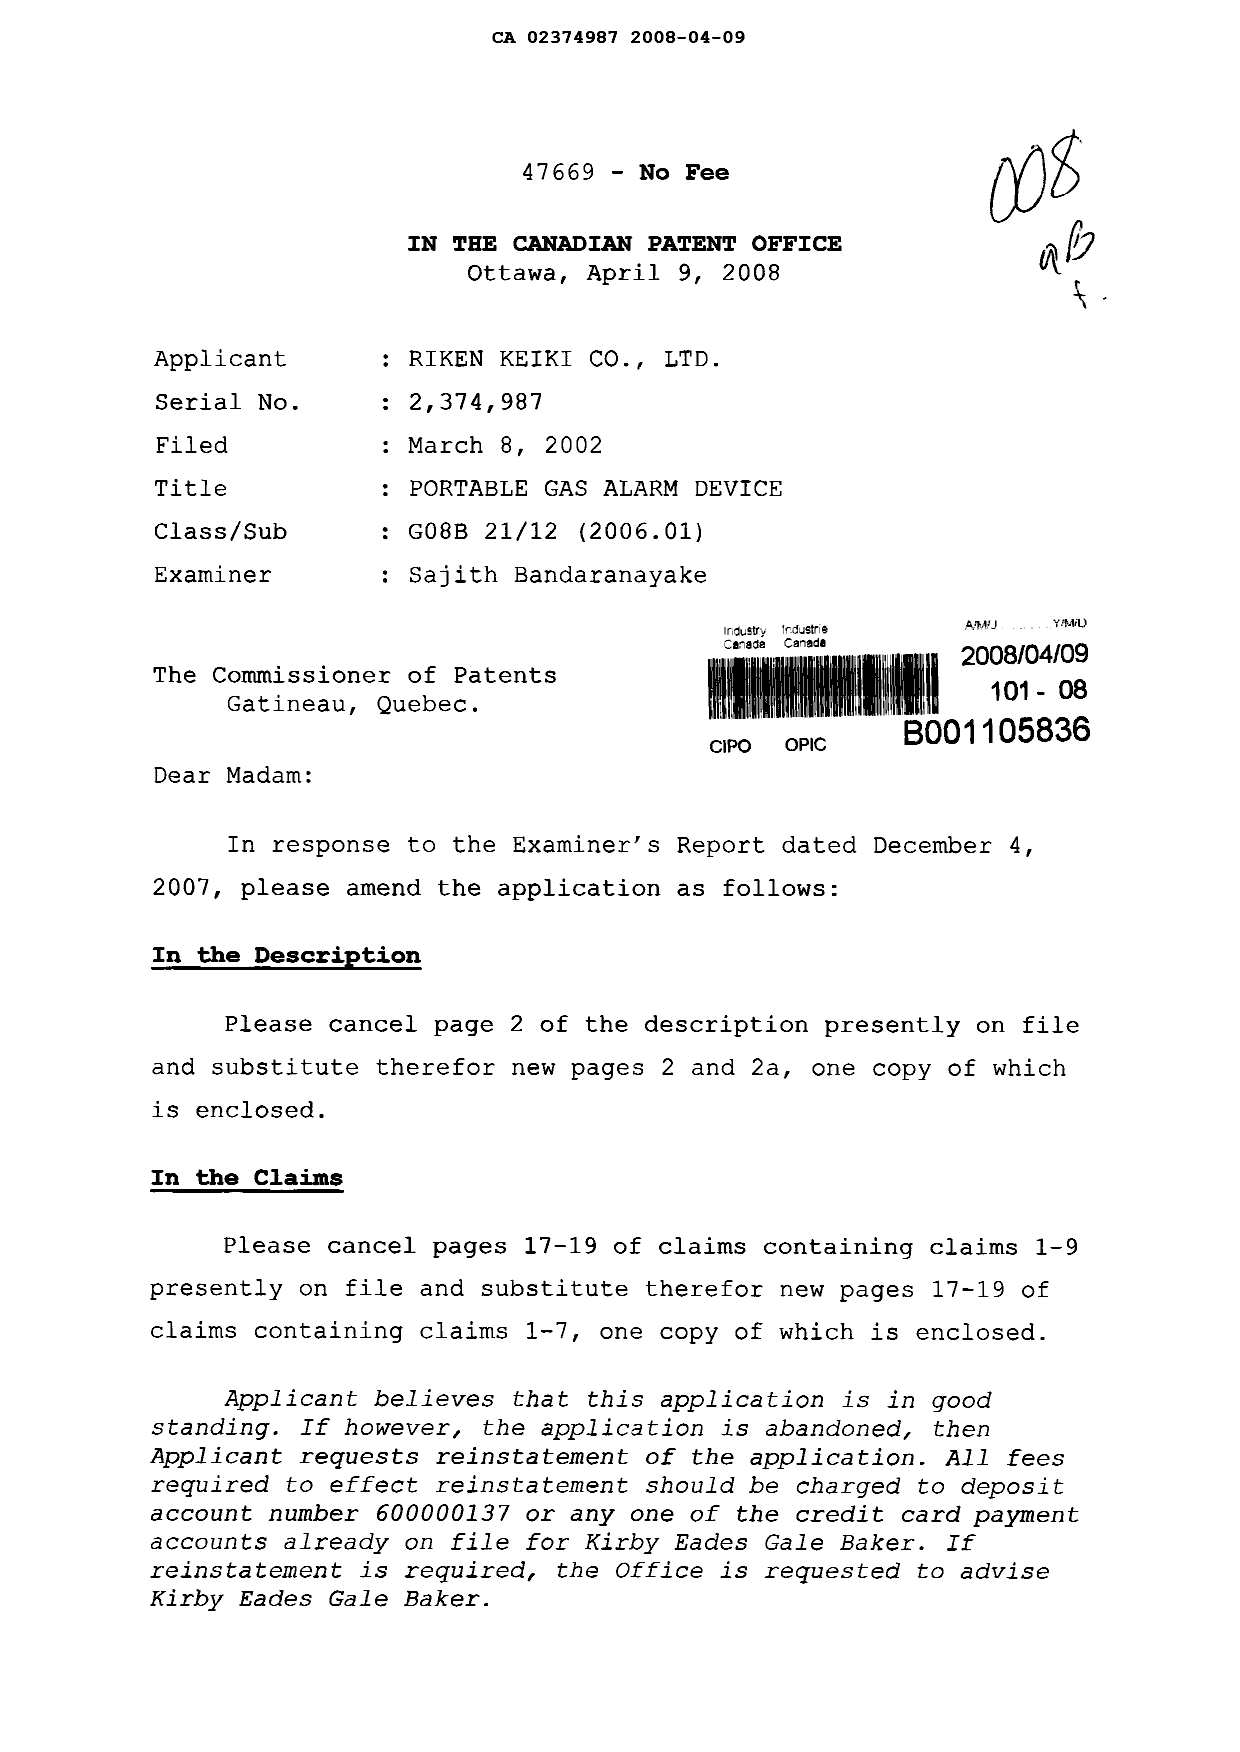 Document de brevet canadien 2374987. Poursuite-Amendment 20080409. Image 1 de 10